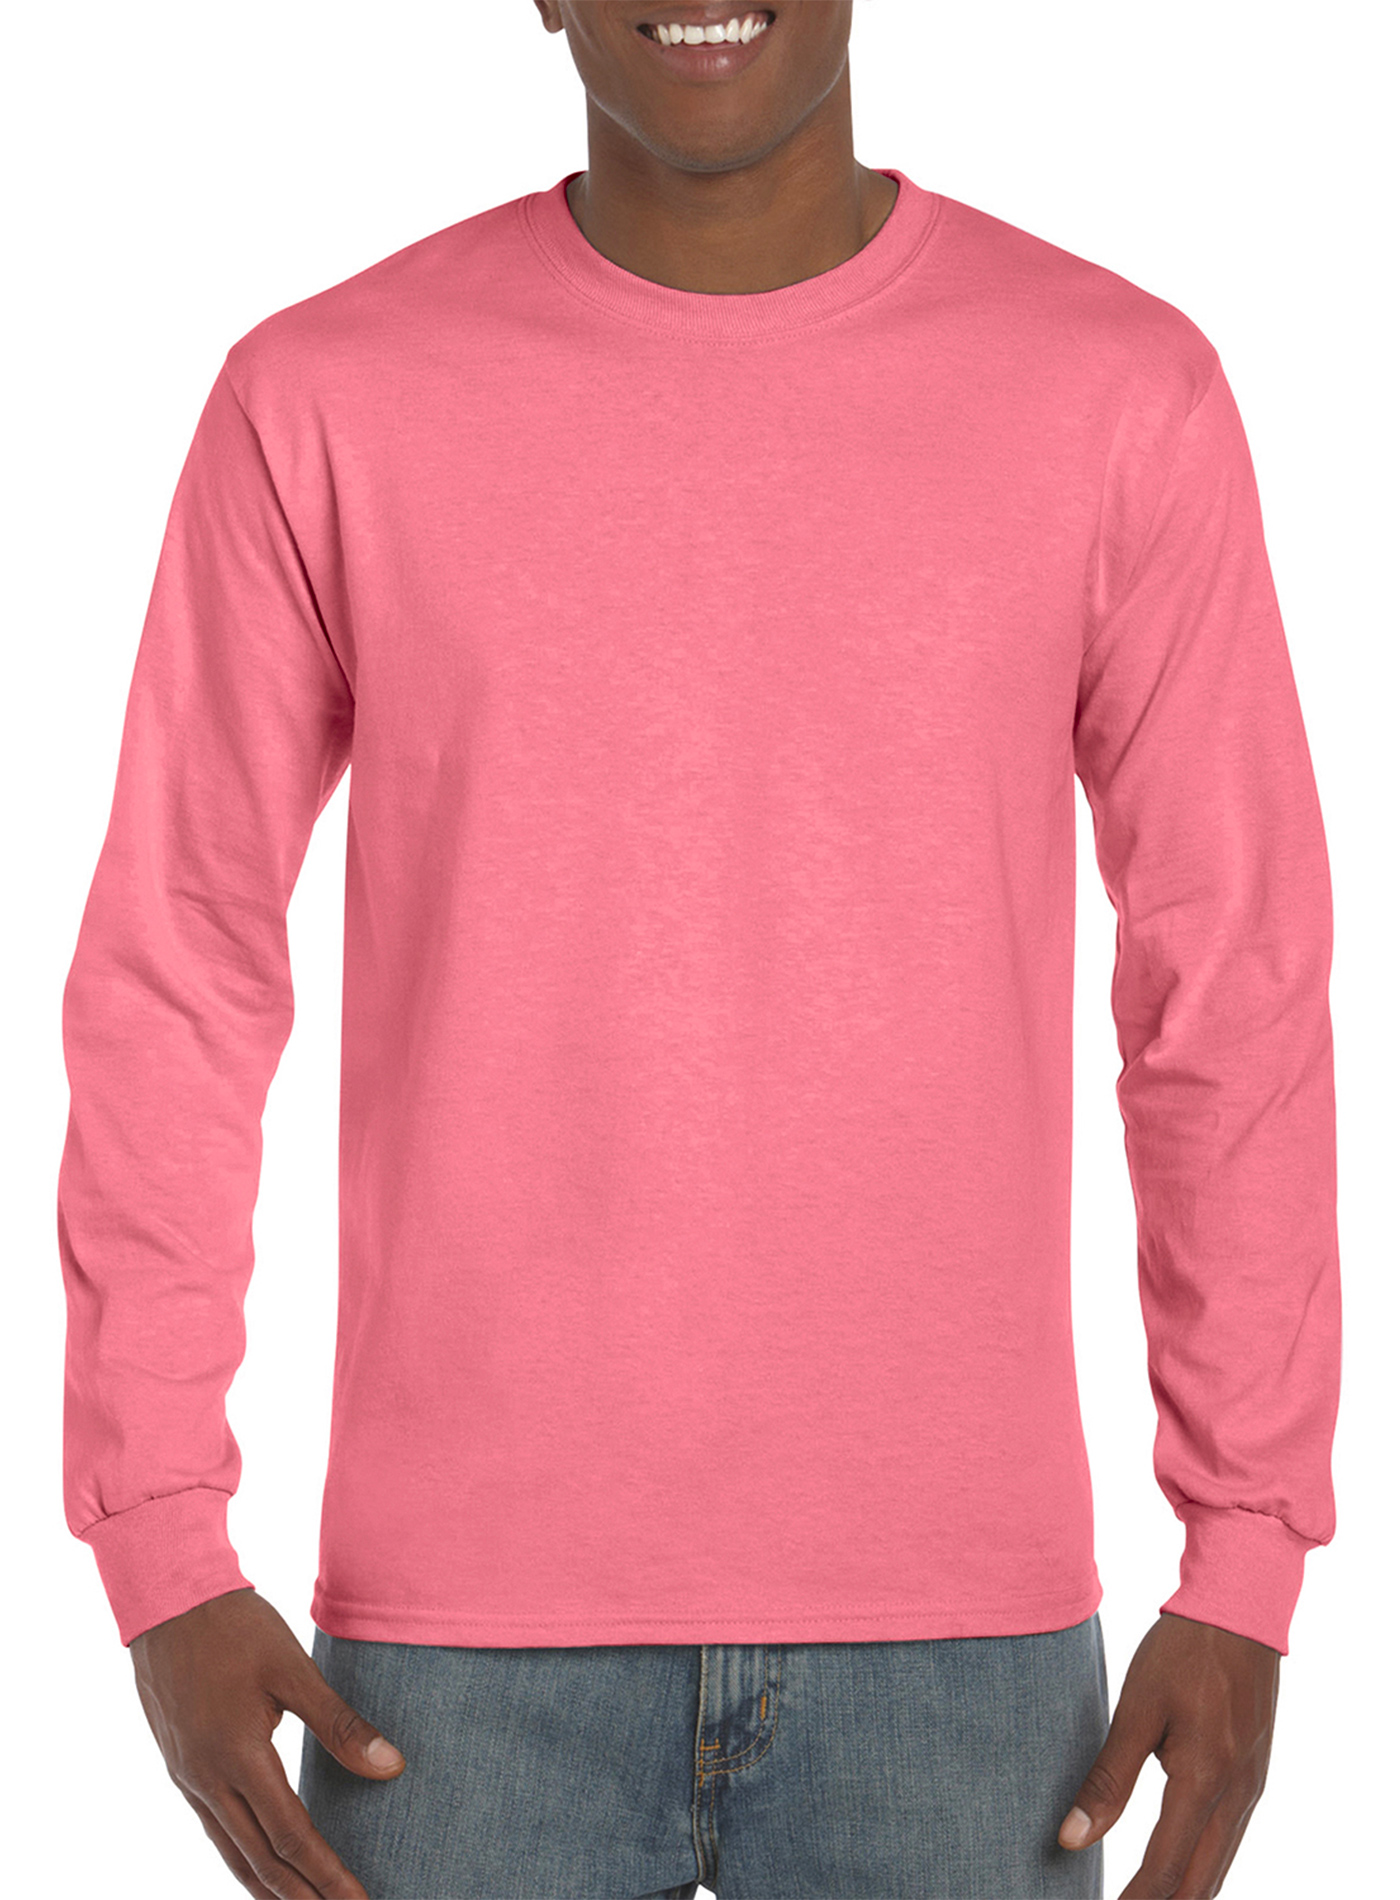 Pánské tričko s dlouhým rukávem Gildan Hammer - Zářivá růžová XXL